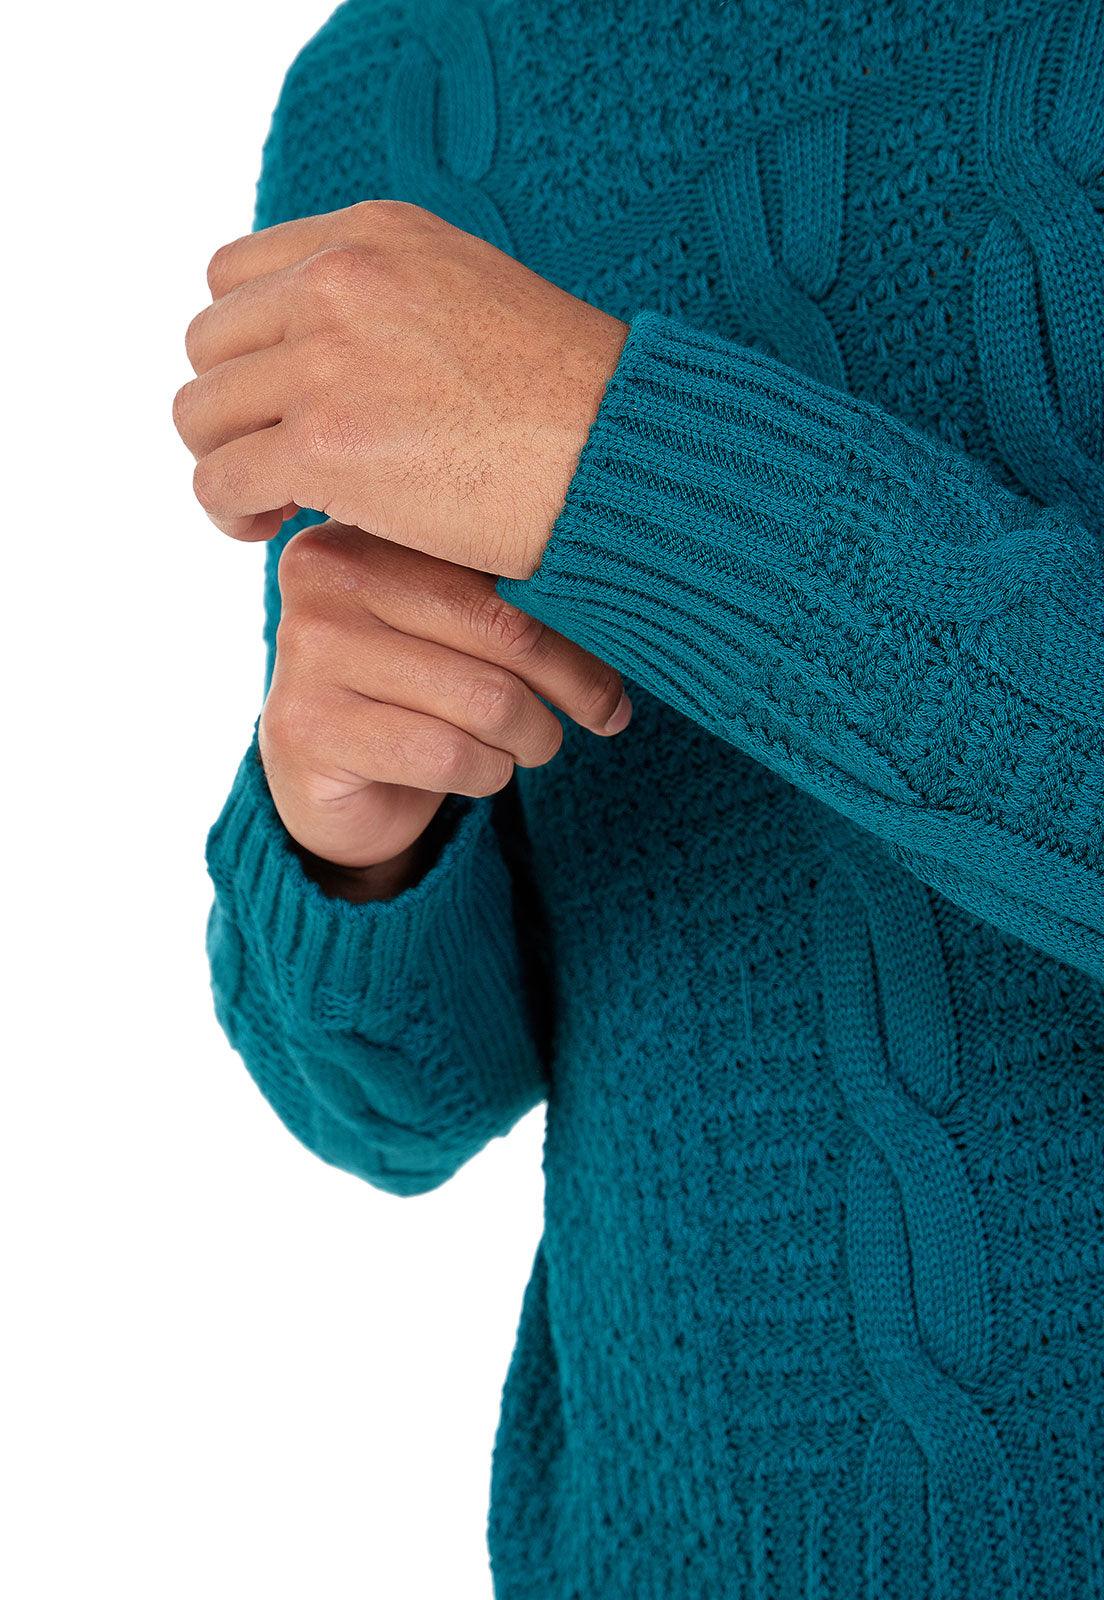 Suéter Trenza Desigual para hombre - Cómodo y moderno suéter con tejido de trenzas y colores vibrantes de Giive.